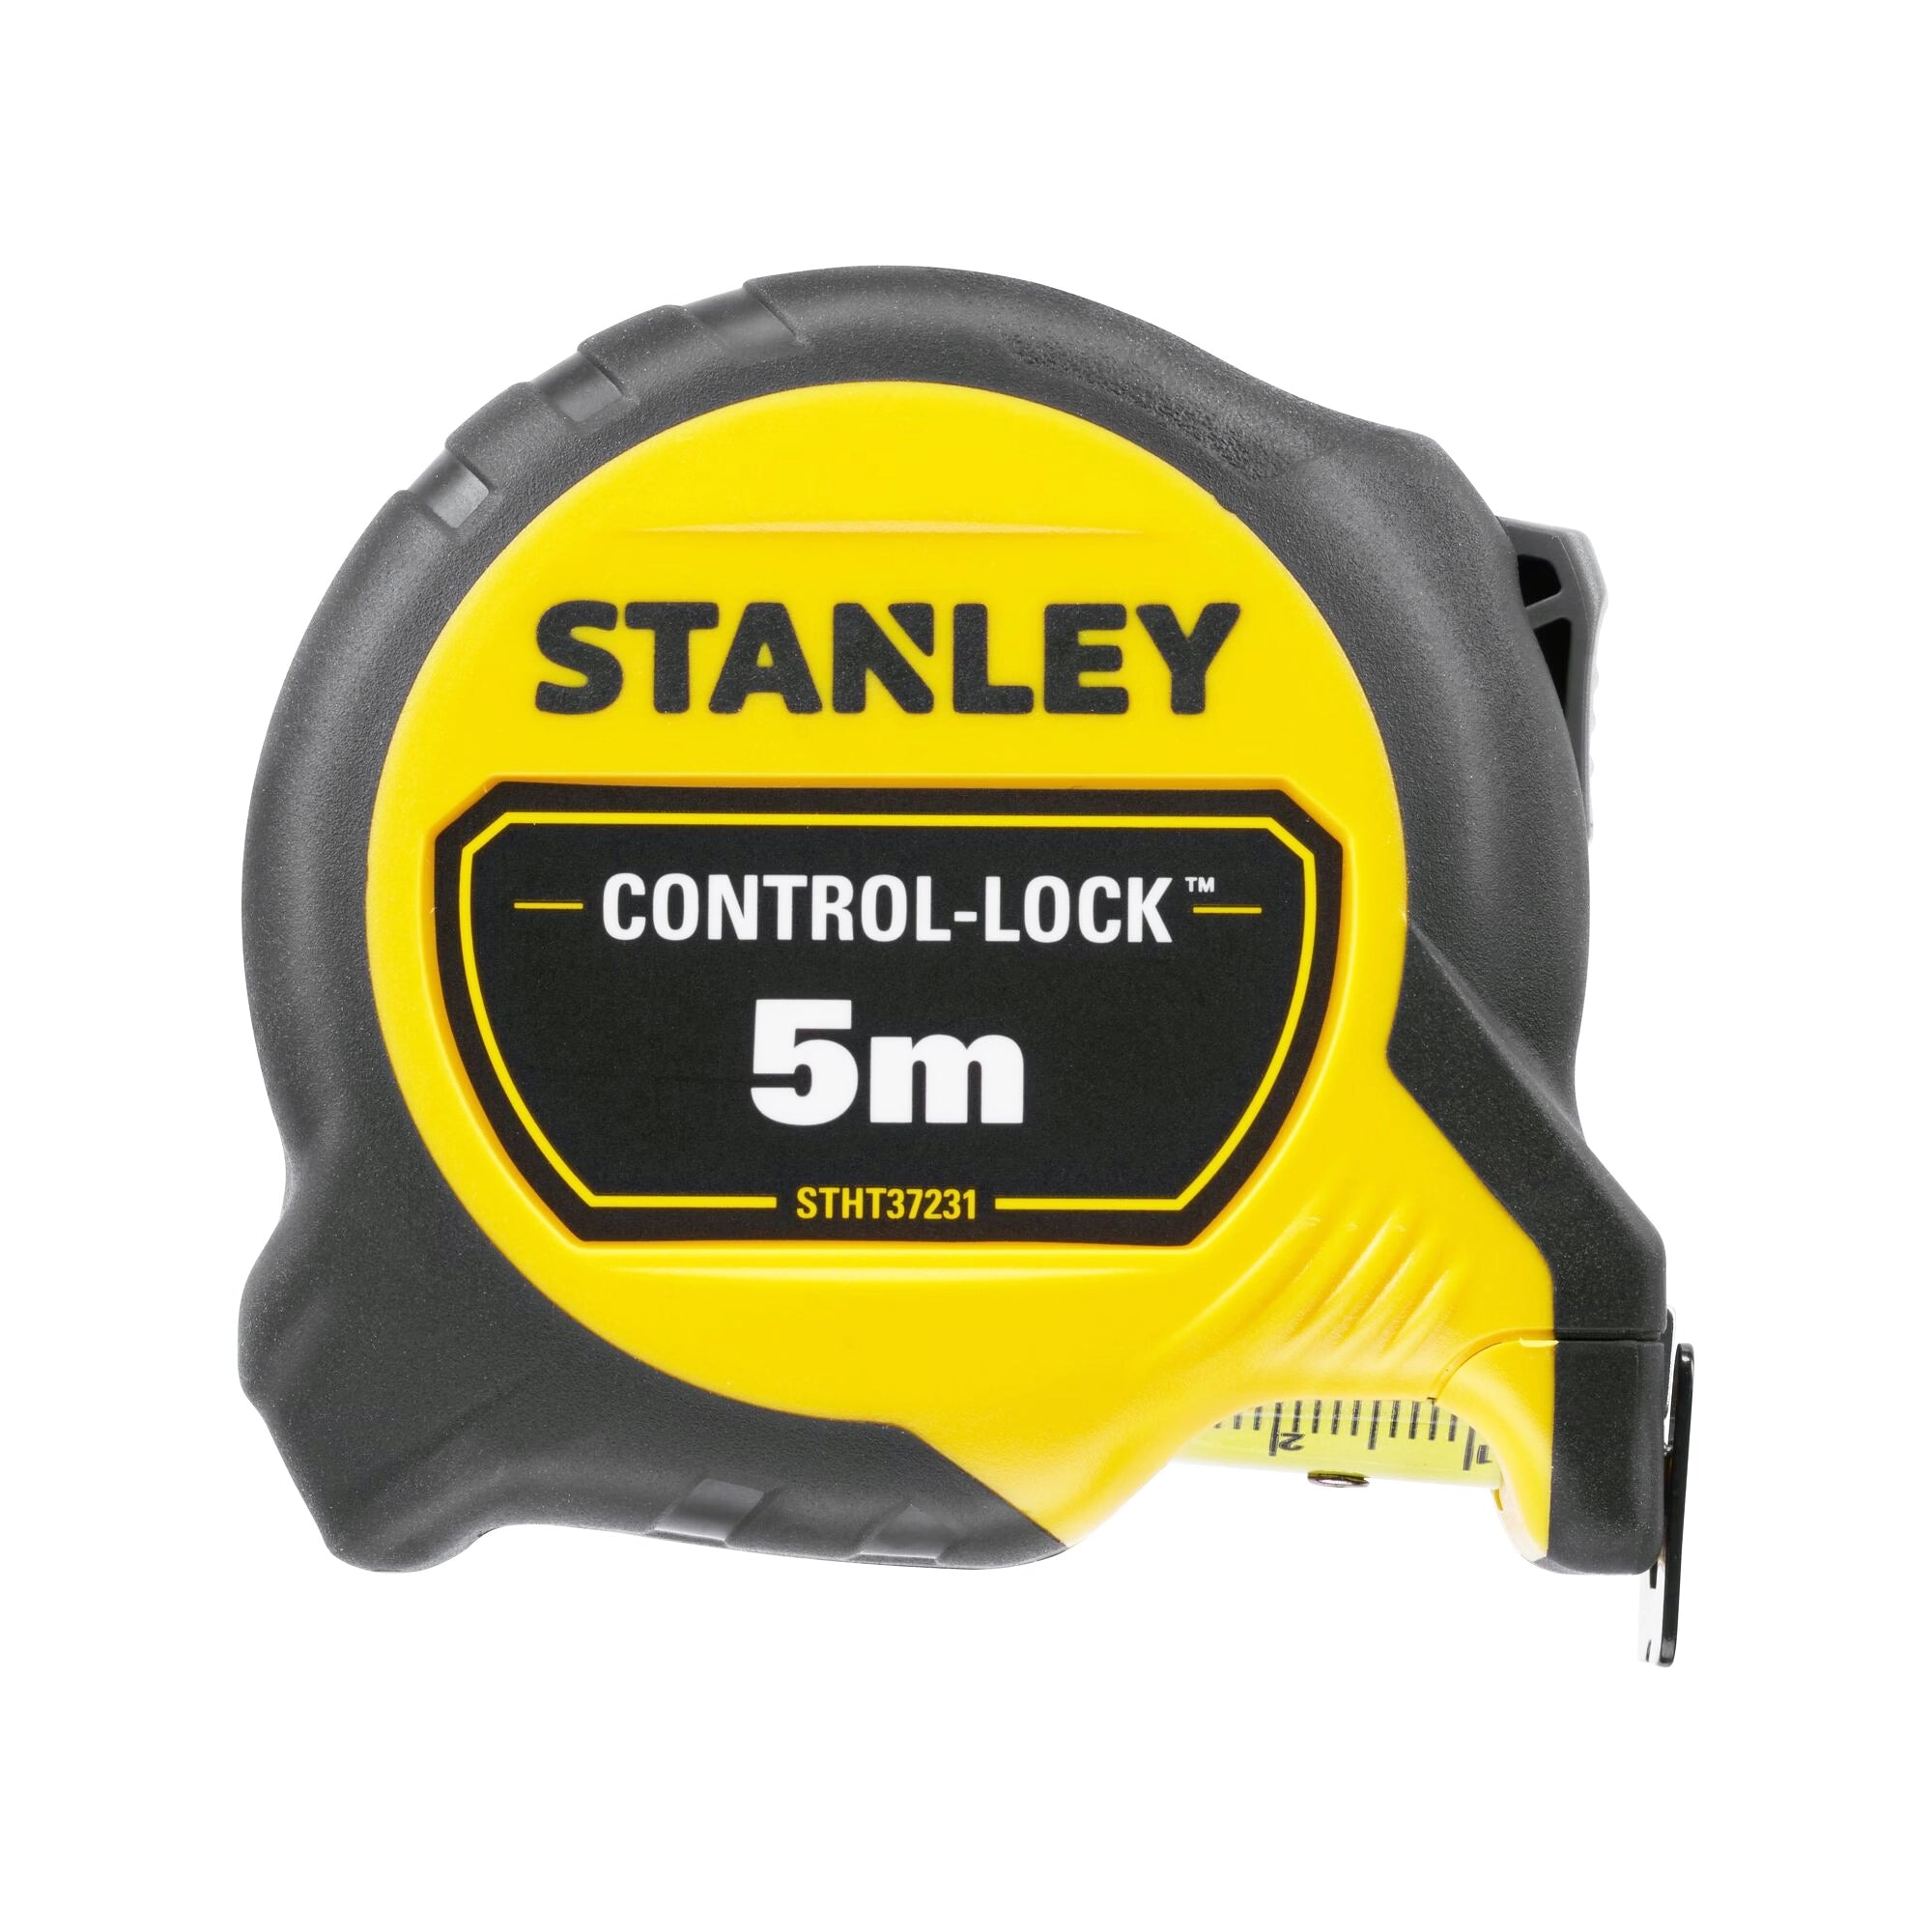 Flessometro Stanley STHT37231-0